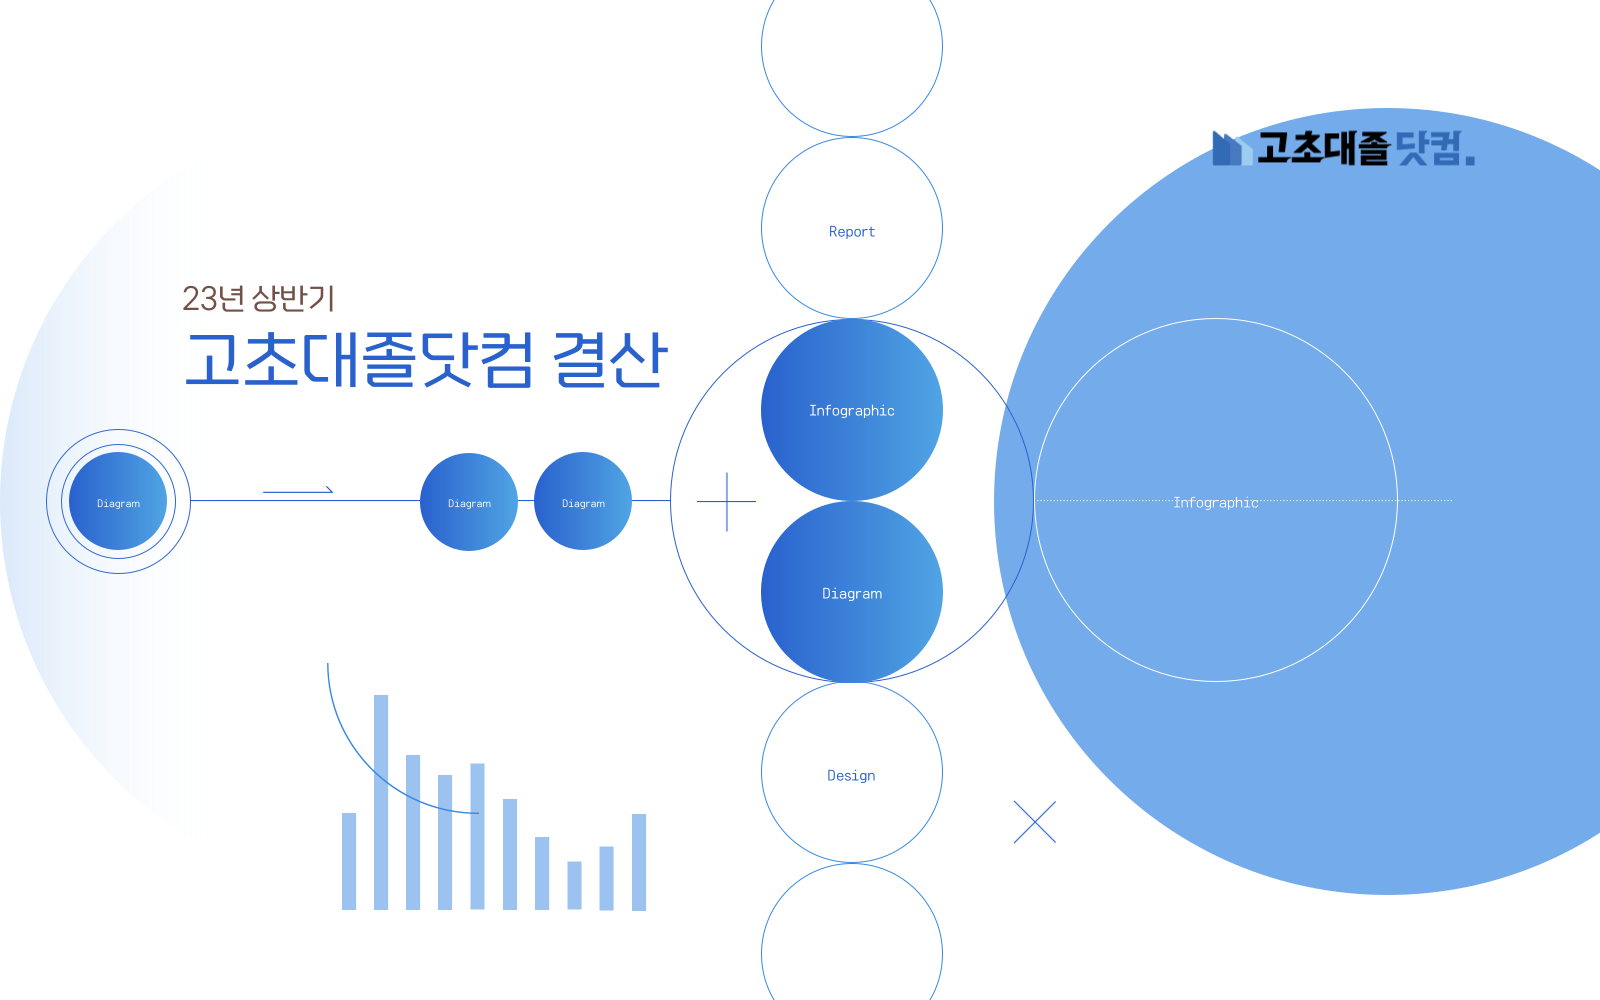 23년 상반기 고초대졸닷컴 결산 생산/기능직 통계 리포트